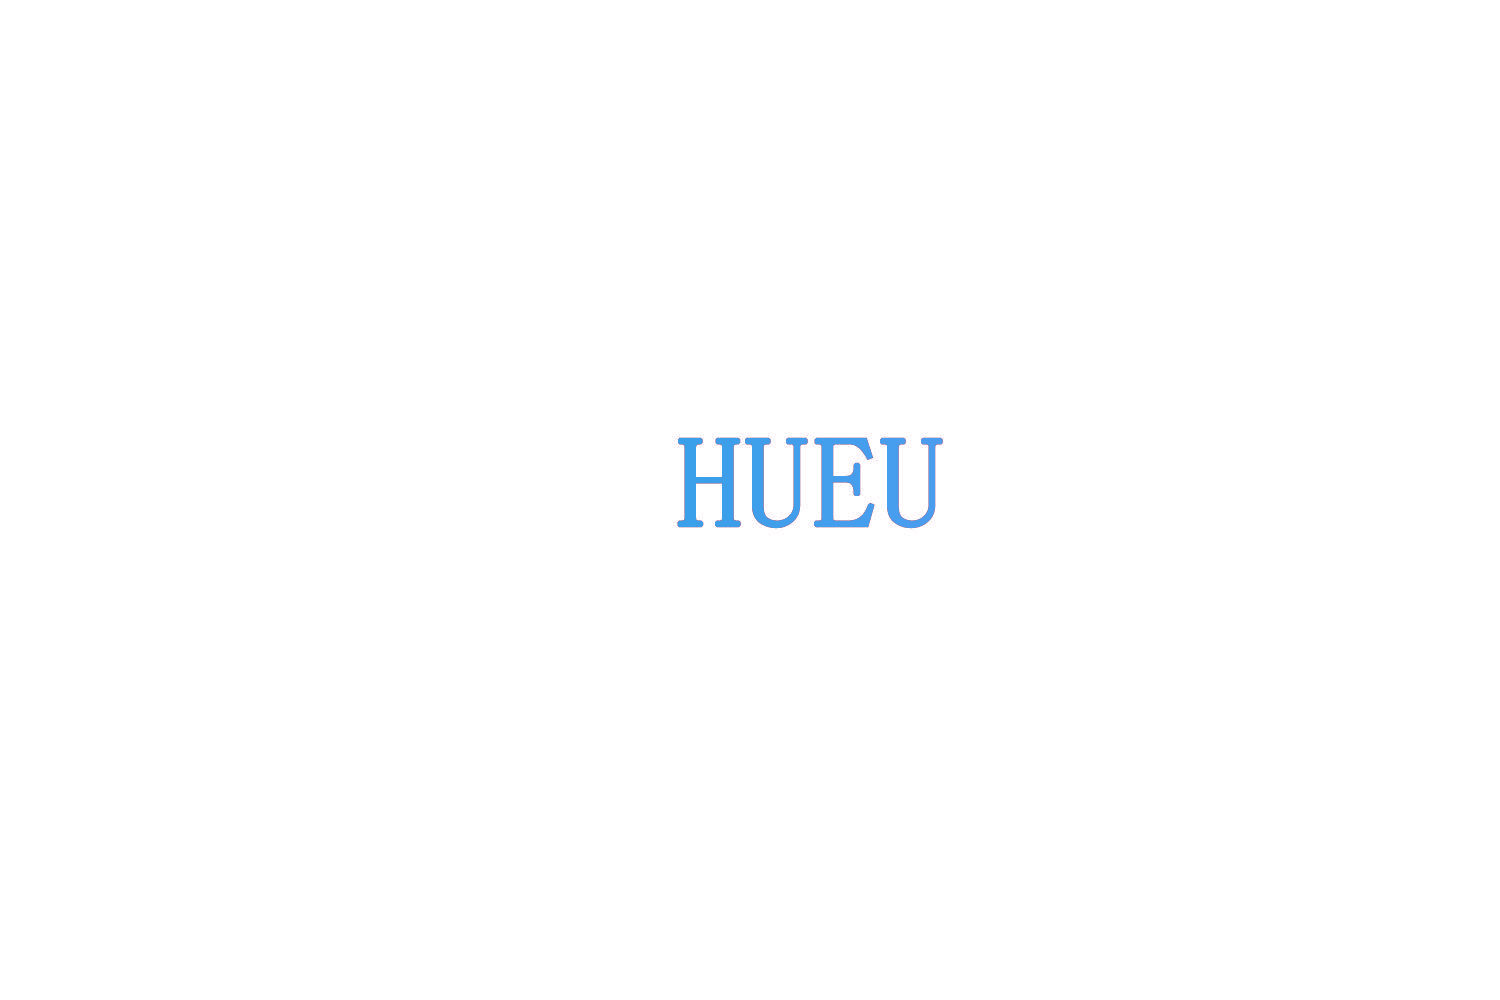 HUEU